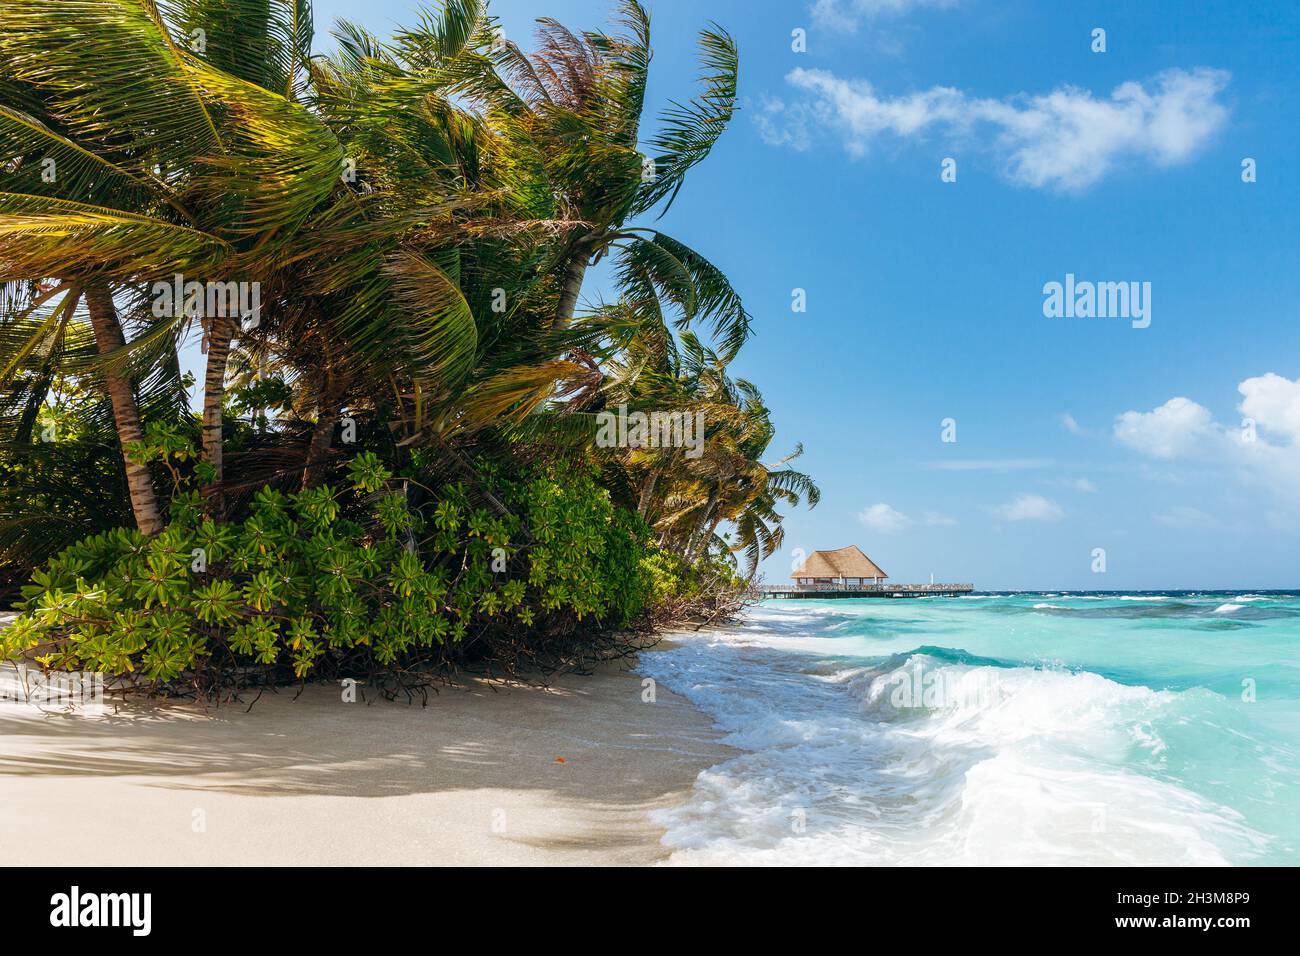 Idyllic beach scene in Maldives, North Male Atoll Stock Photo